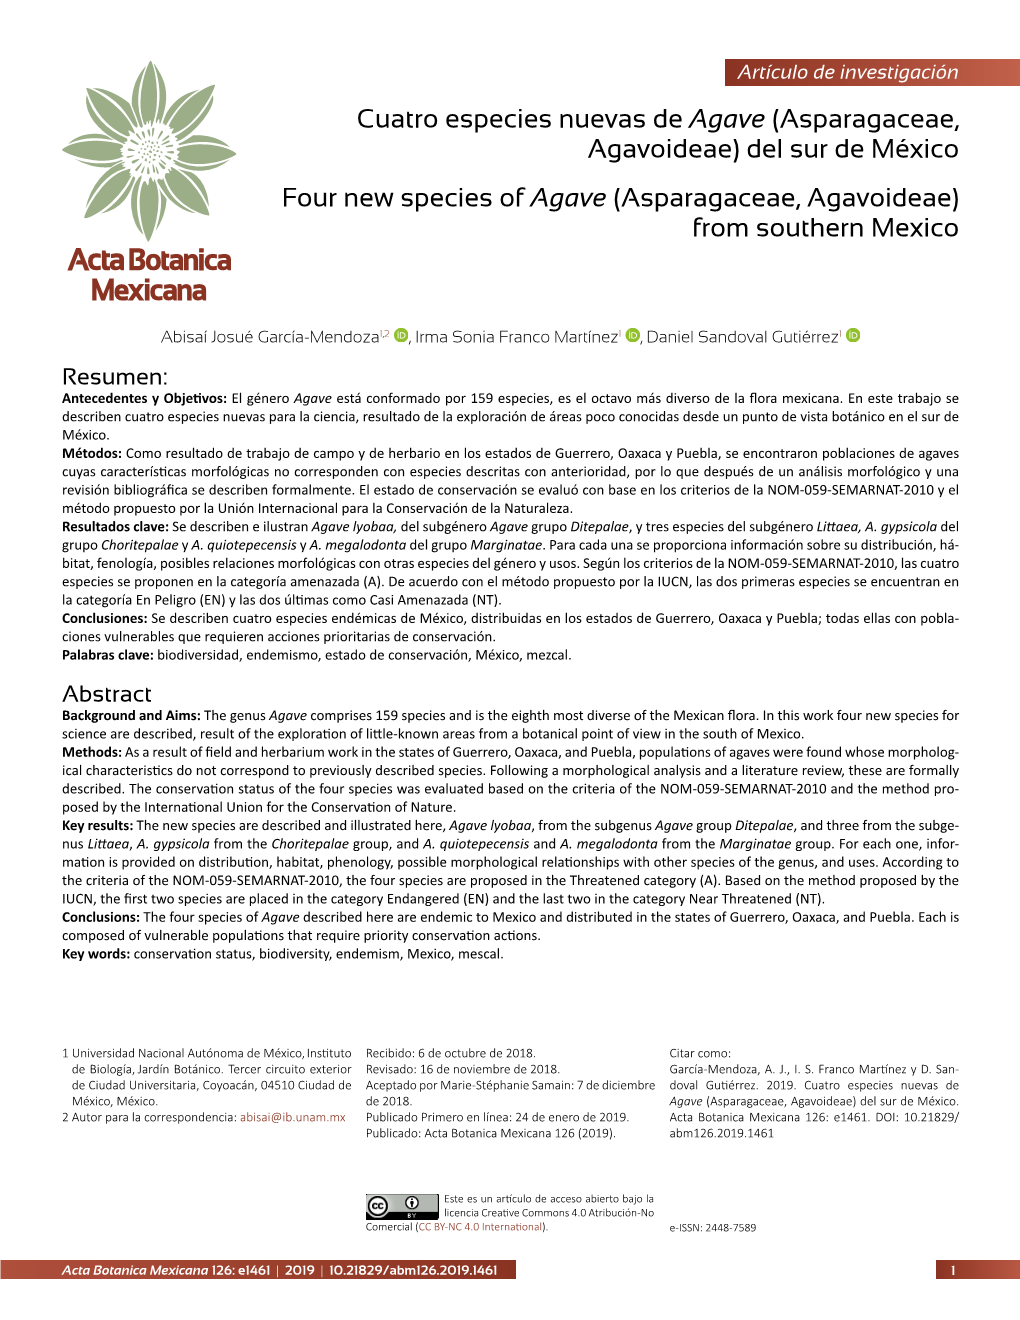 Cuatro Especies Nuevas De Agave (Asparagaceae, Agavoideae) Del Sur De México Four New Species of Agave (Asparagaceae, Agavoideae) from Southern Mexico